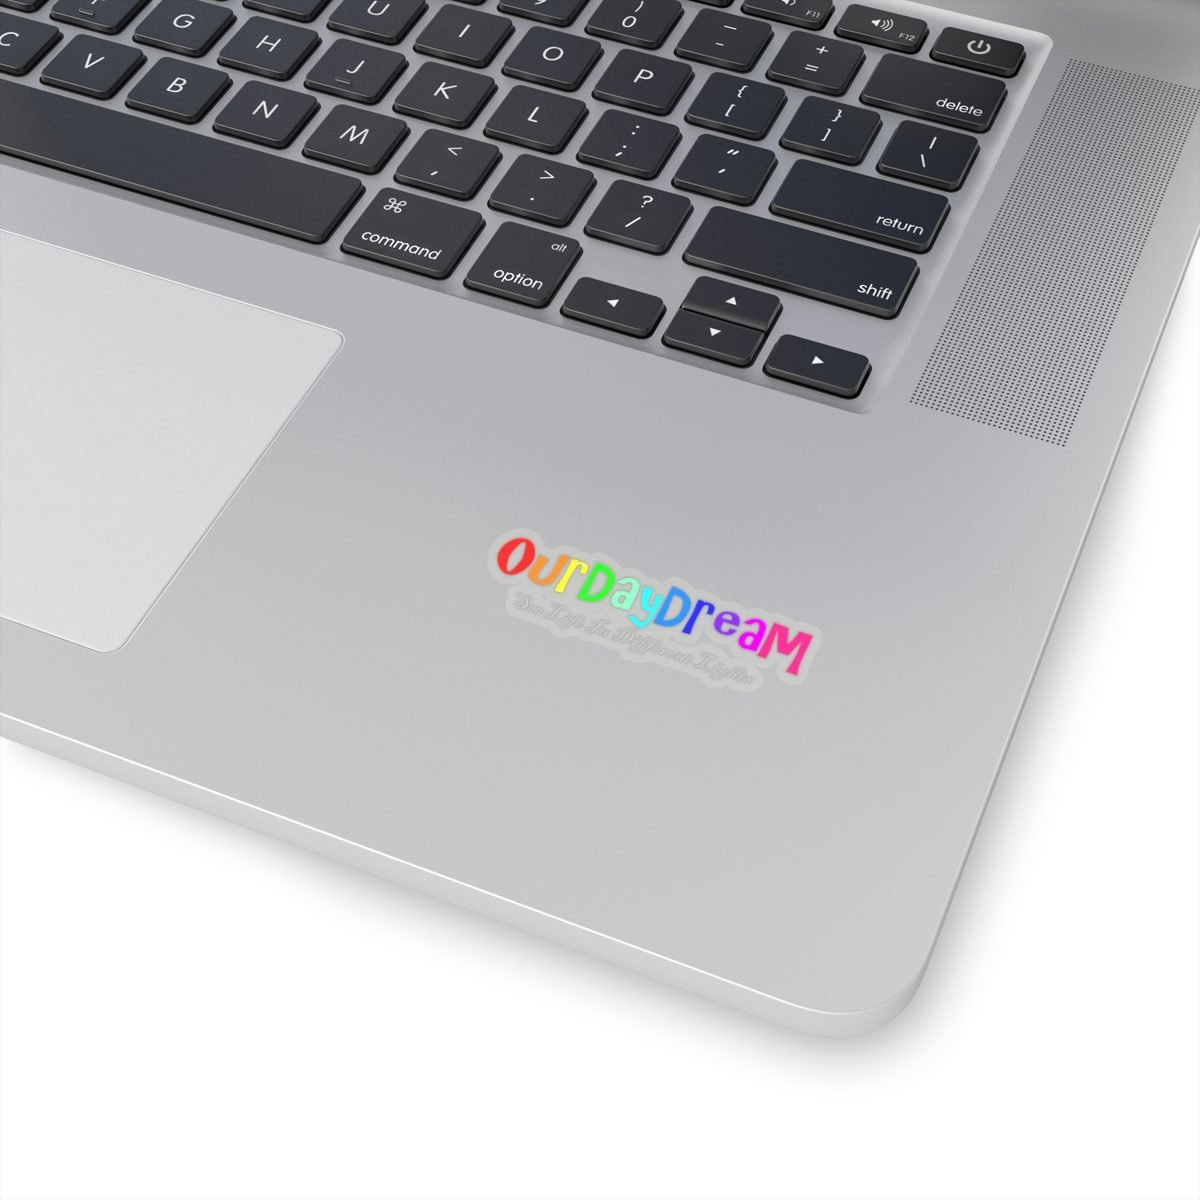 OurDayDream Logo Die Cut Stickers